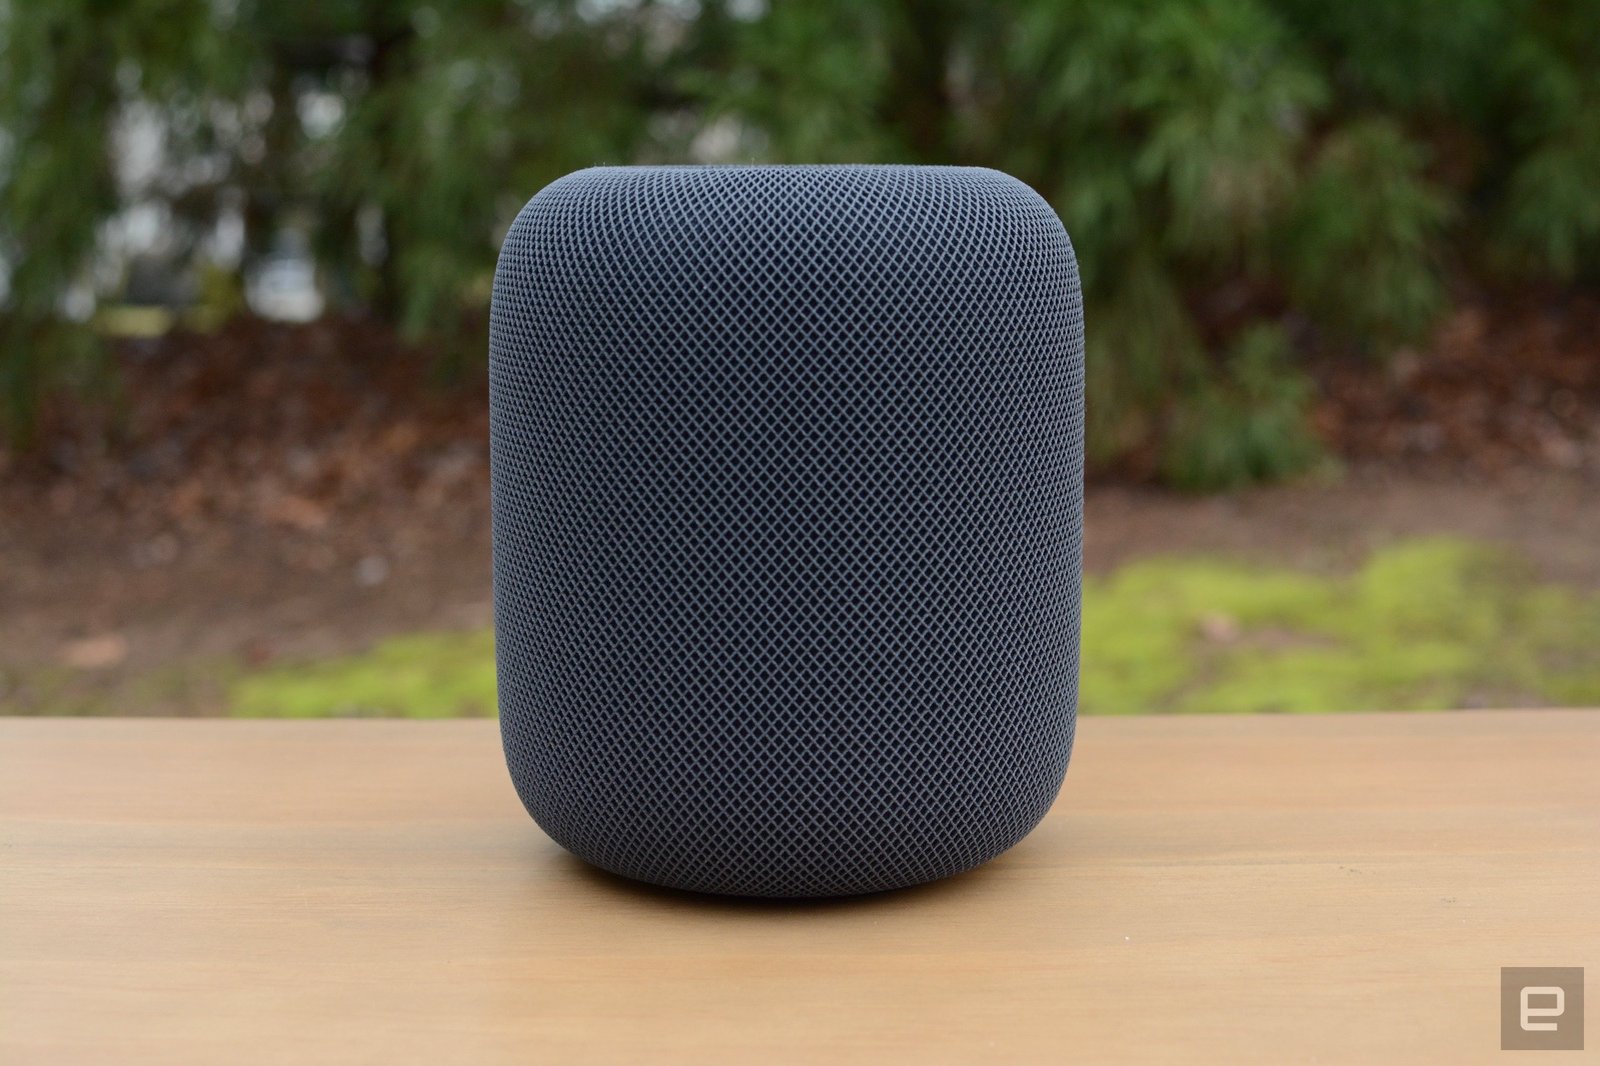 Apple HomePod (2nd gen) review: A wiser neat speaker